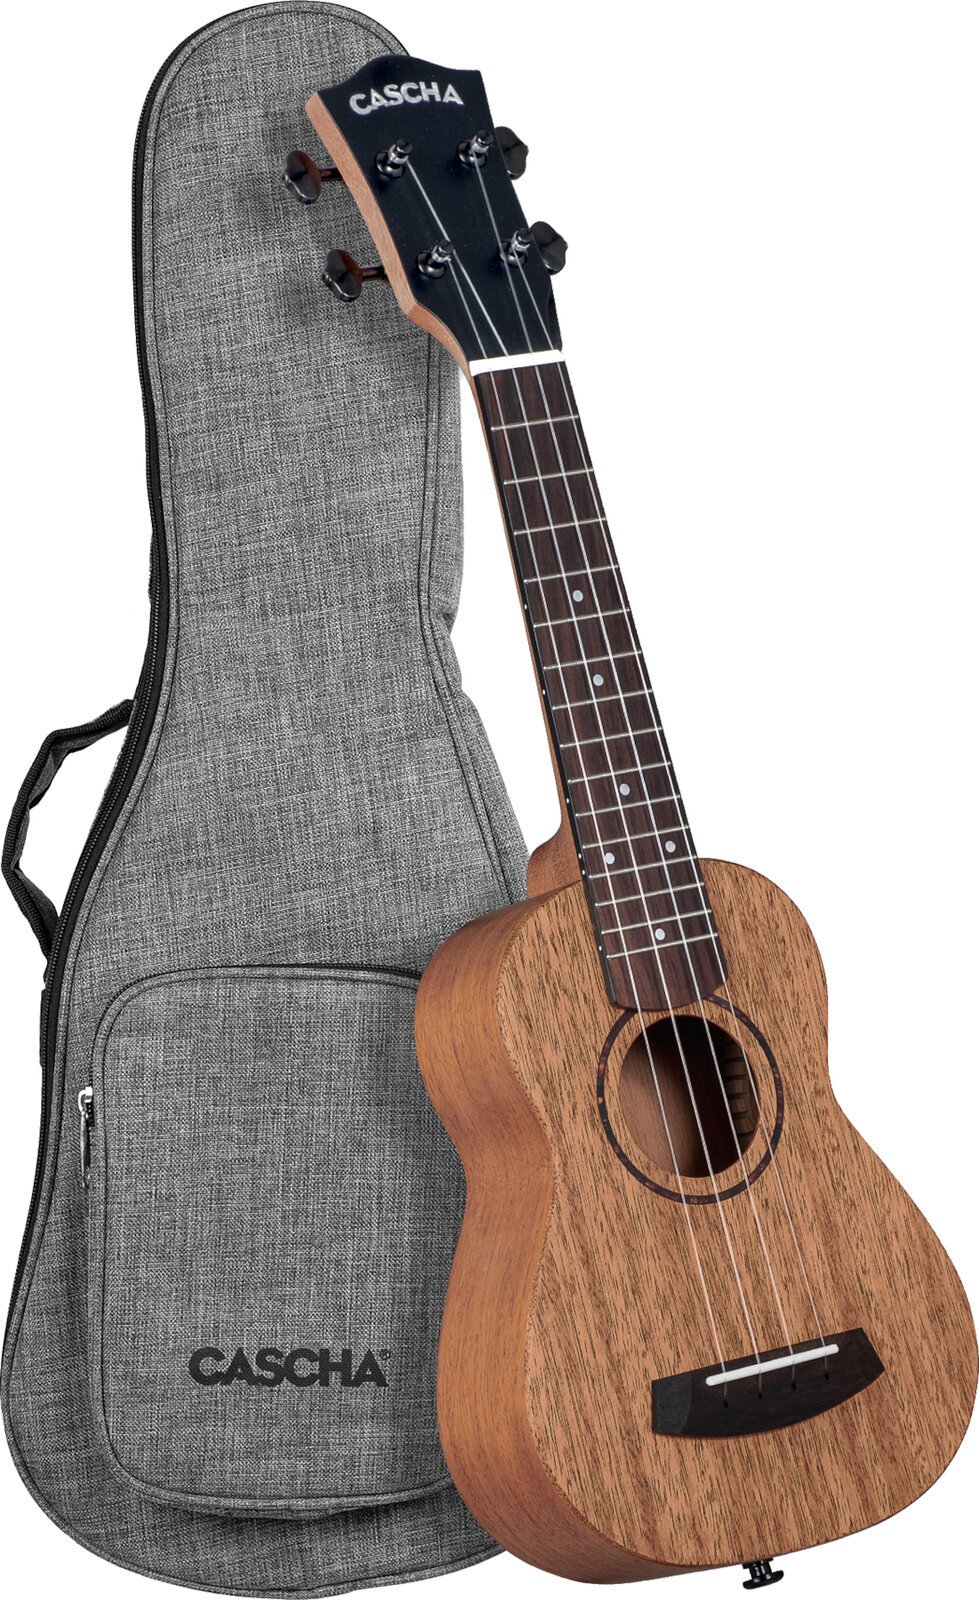 Szoprán ukulele Cascha Soprano Ukulele Mahogany Solid Szoprán ukulele Natural